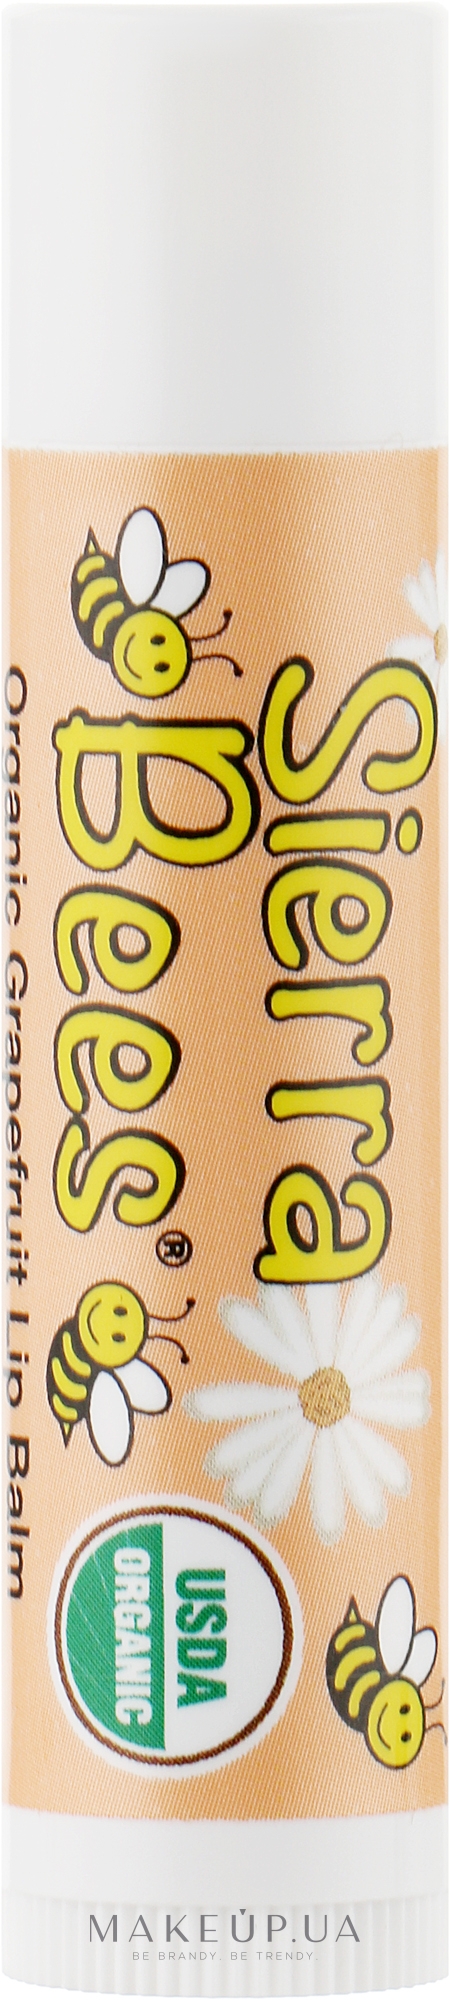 Бальзам для губ органический "Грейпфрут" - Sierra Bees Grapefruit Organic Lip Balm — фото 4.25g